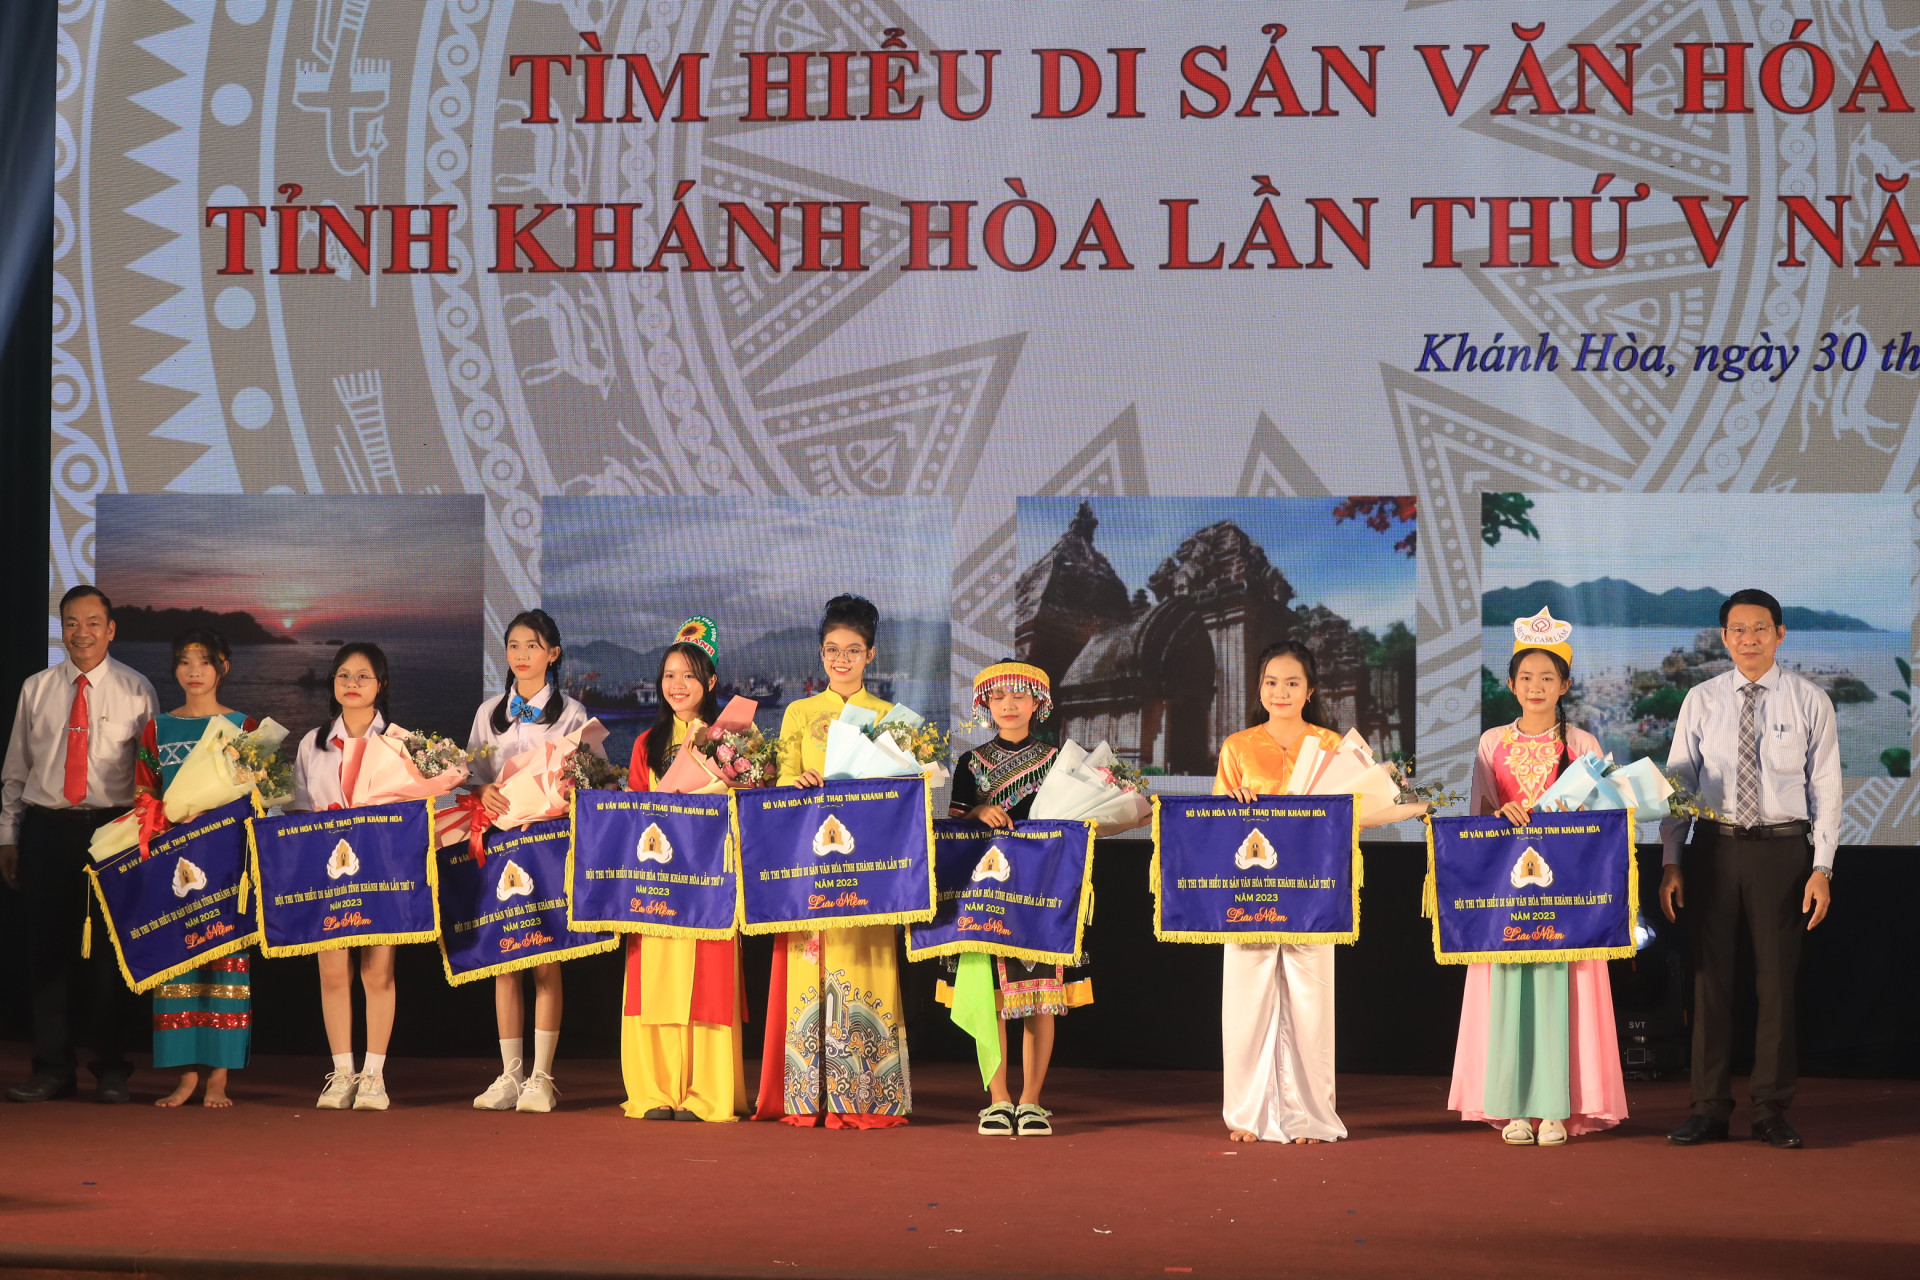 Ông Đinh Văn Thiệu trao cờ lưu niệm cho đại diện các đội dự thi.